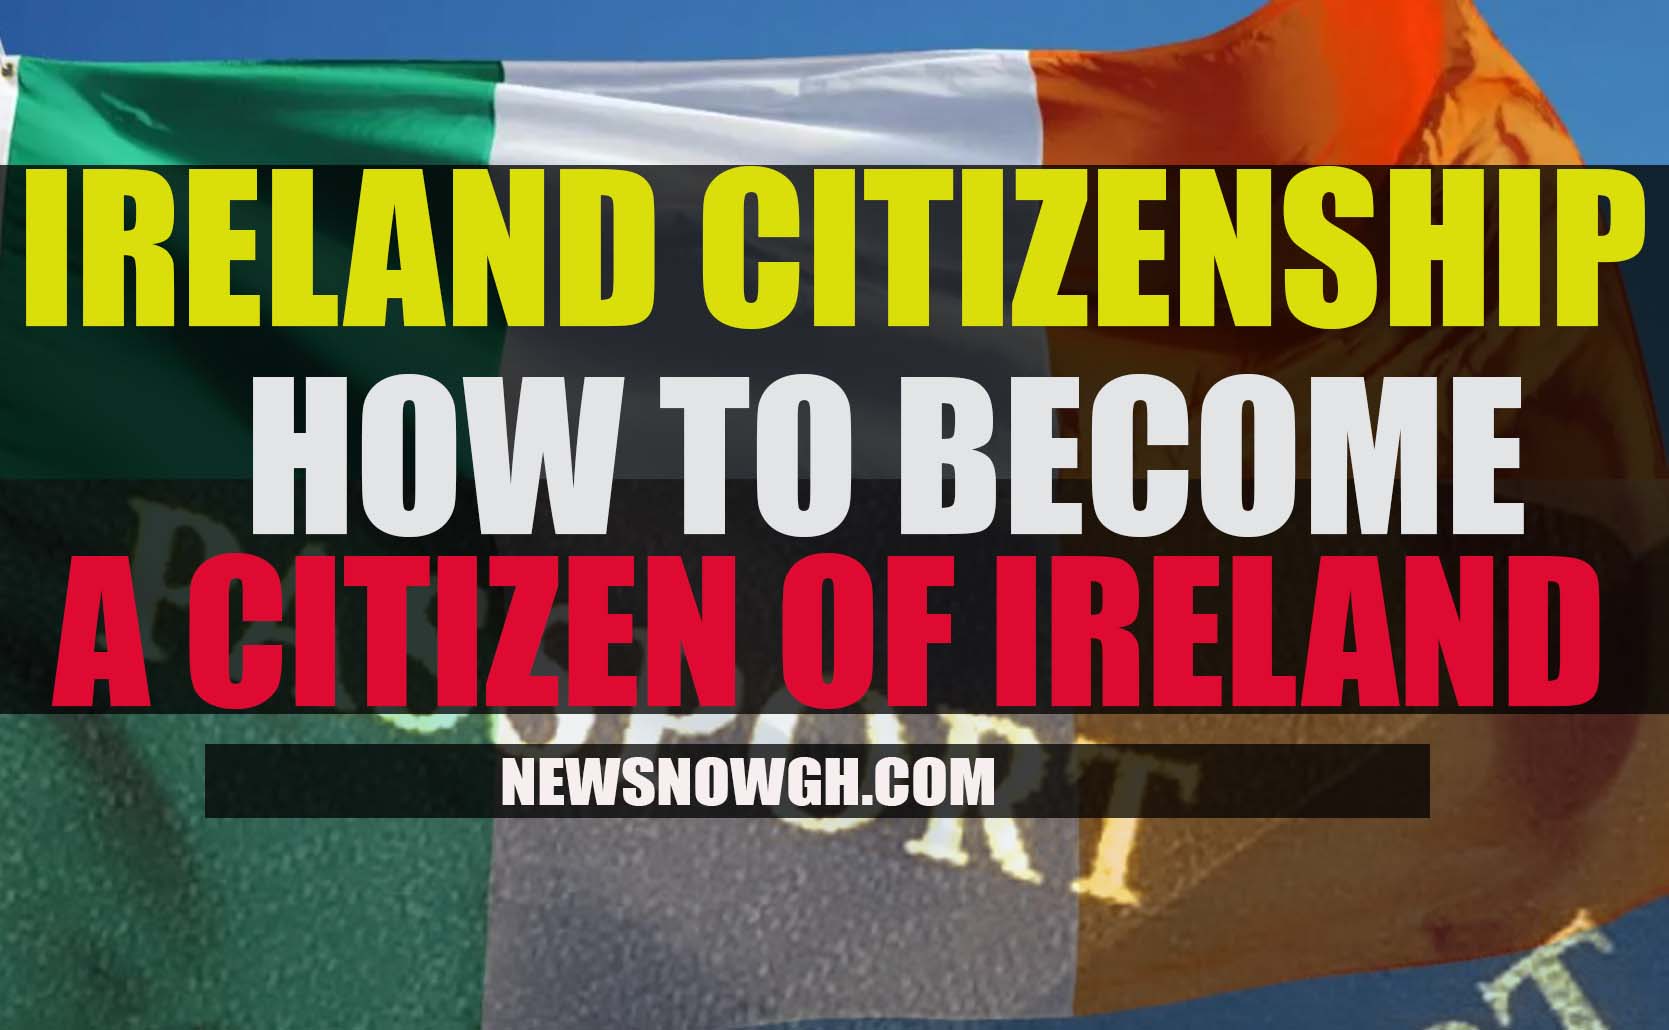 IRELAND CITIZENSHIP - BECOME A CITIZEN